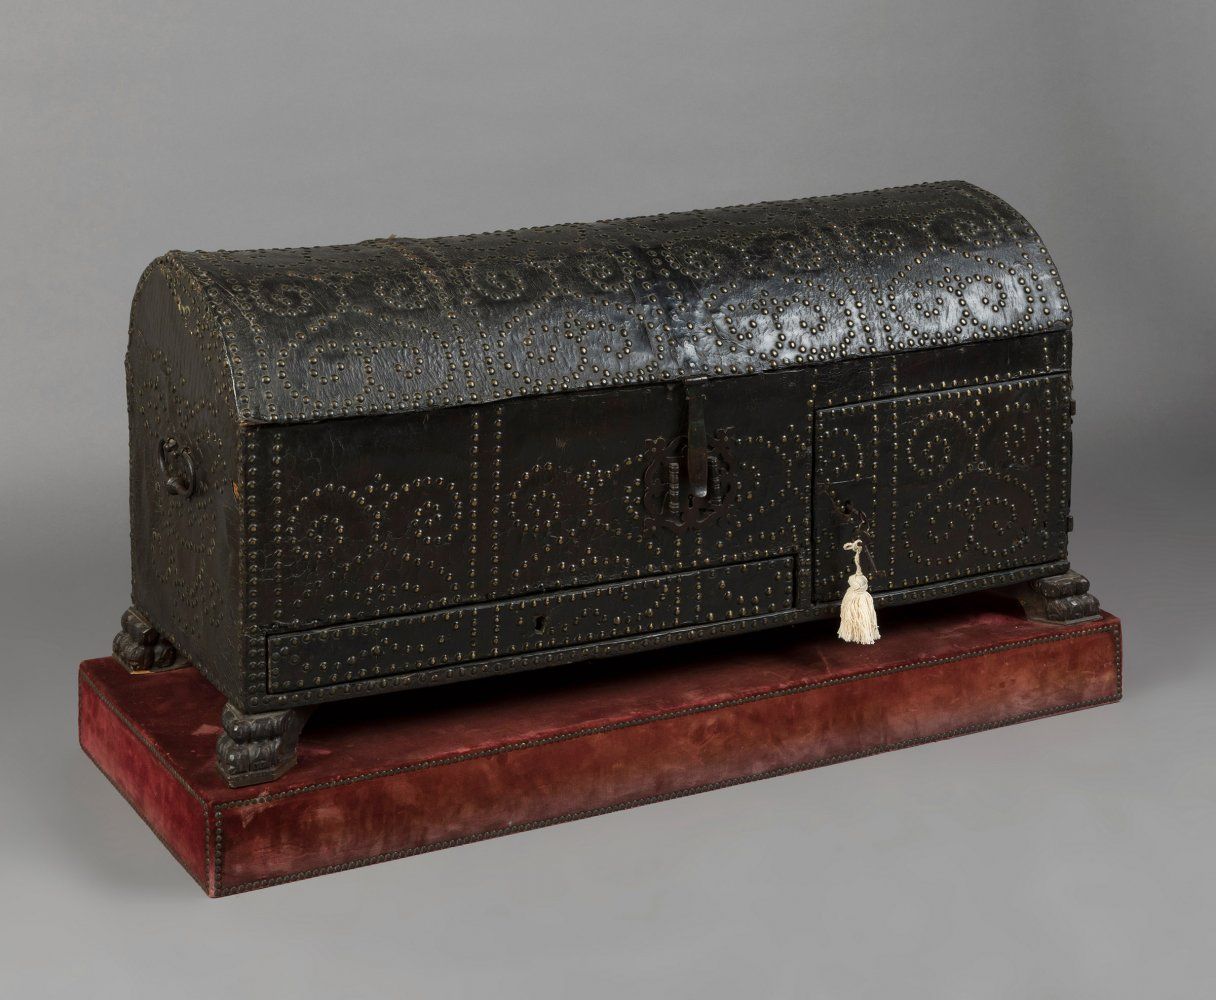 Null 西班牙箱子，17世纪。
木质的皮革装饰。
布衬里的内部。
锁的状况良好。
钥匙被保留下来。
保存状况非常好。
衬布的底座在侧面有轻微损坏。
尺寸：58&hellip;